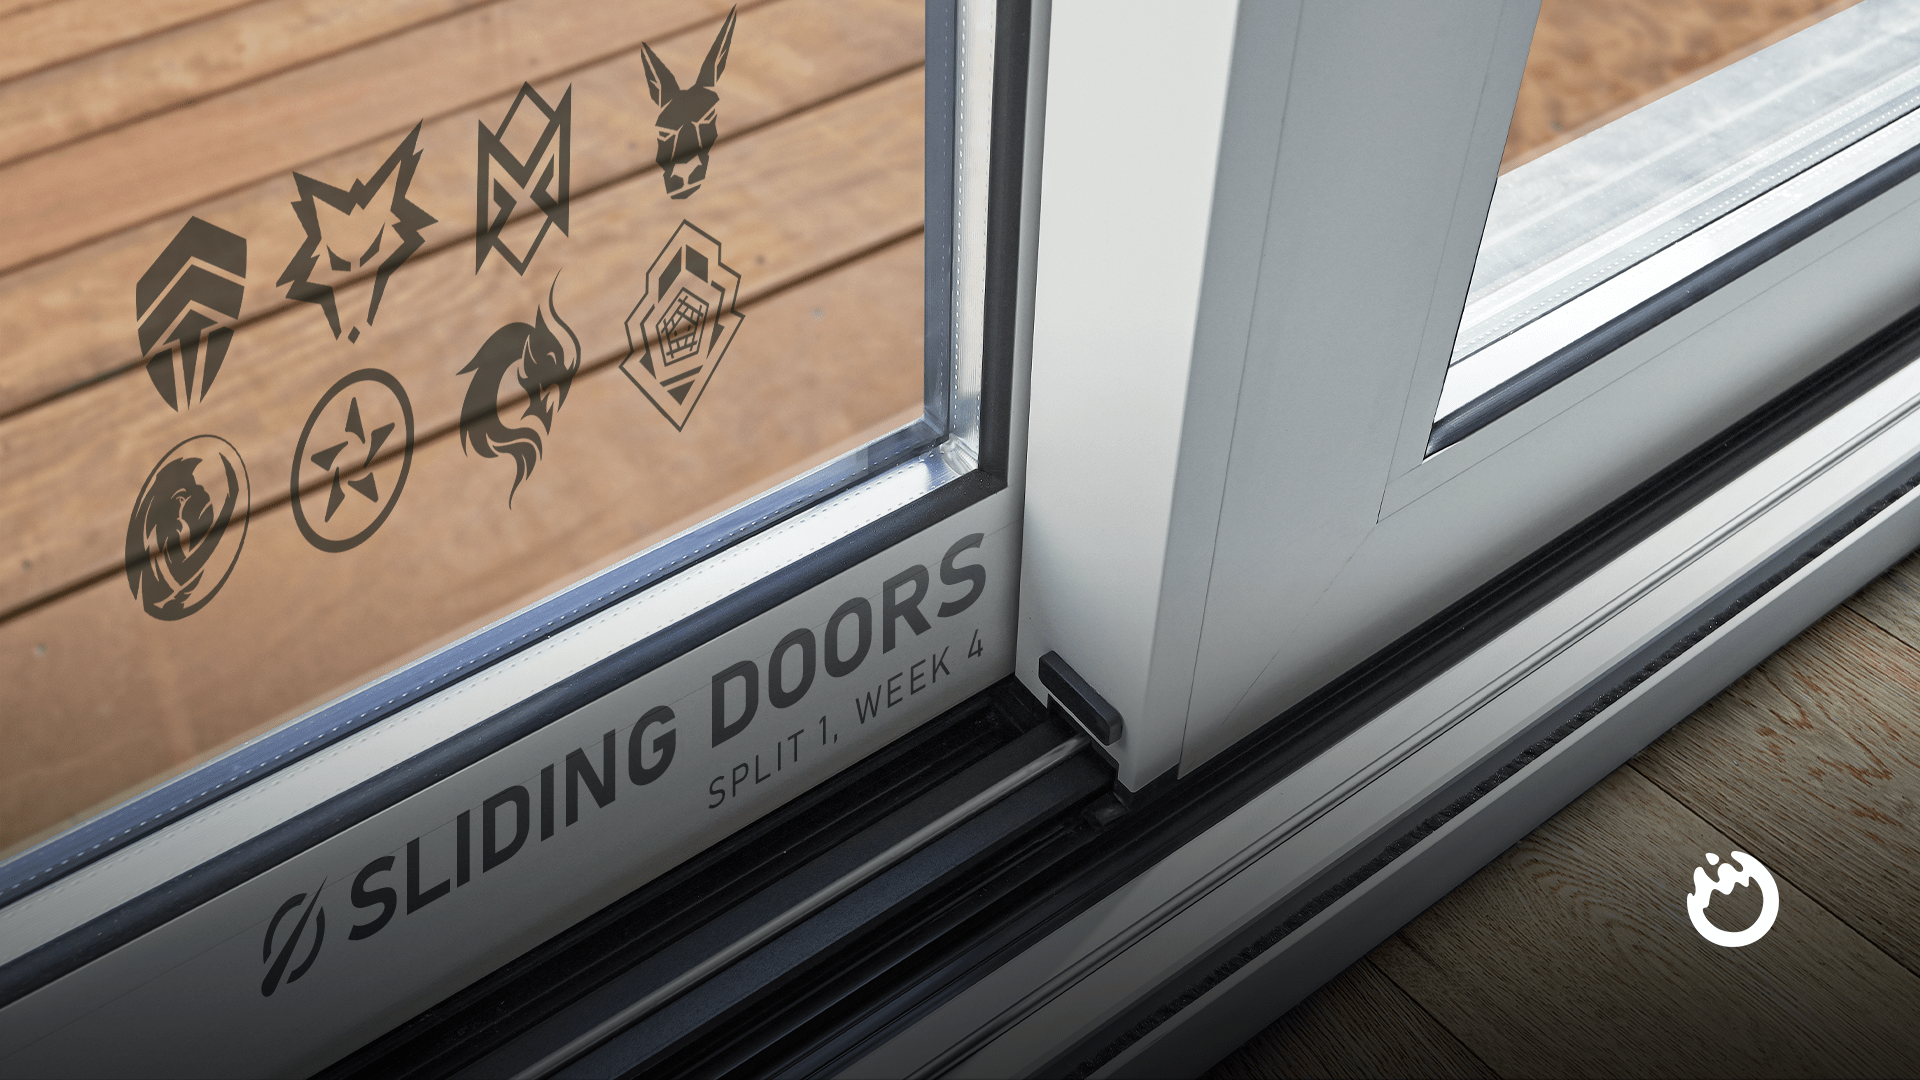 Sliding Doors: LCO 2022 Split 1, Week 4